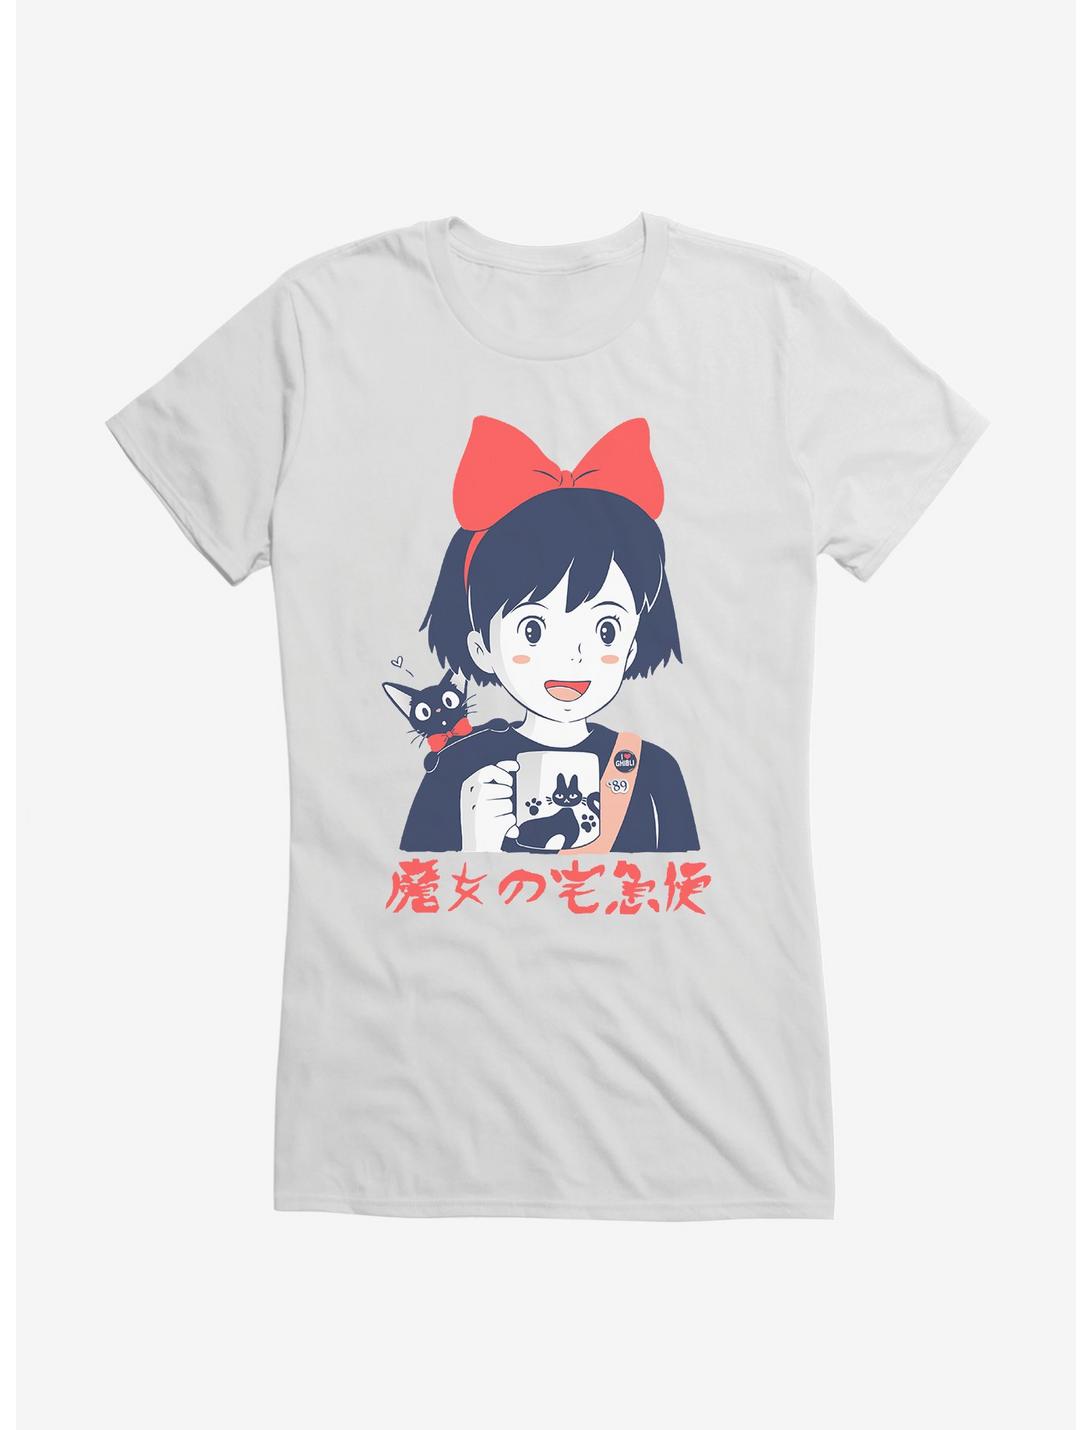 Studio Ghibli Kiki's Delivery Service Retro Portrait Girls T-Shirt, WHITE, hi-res